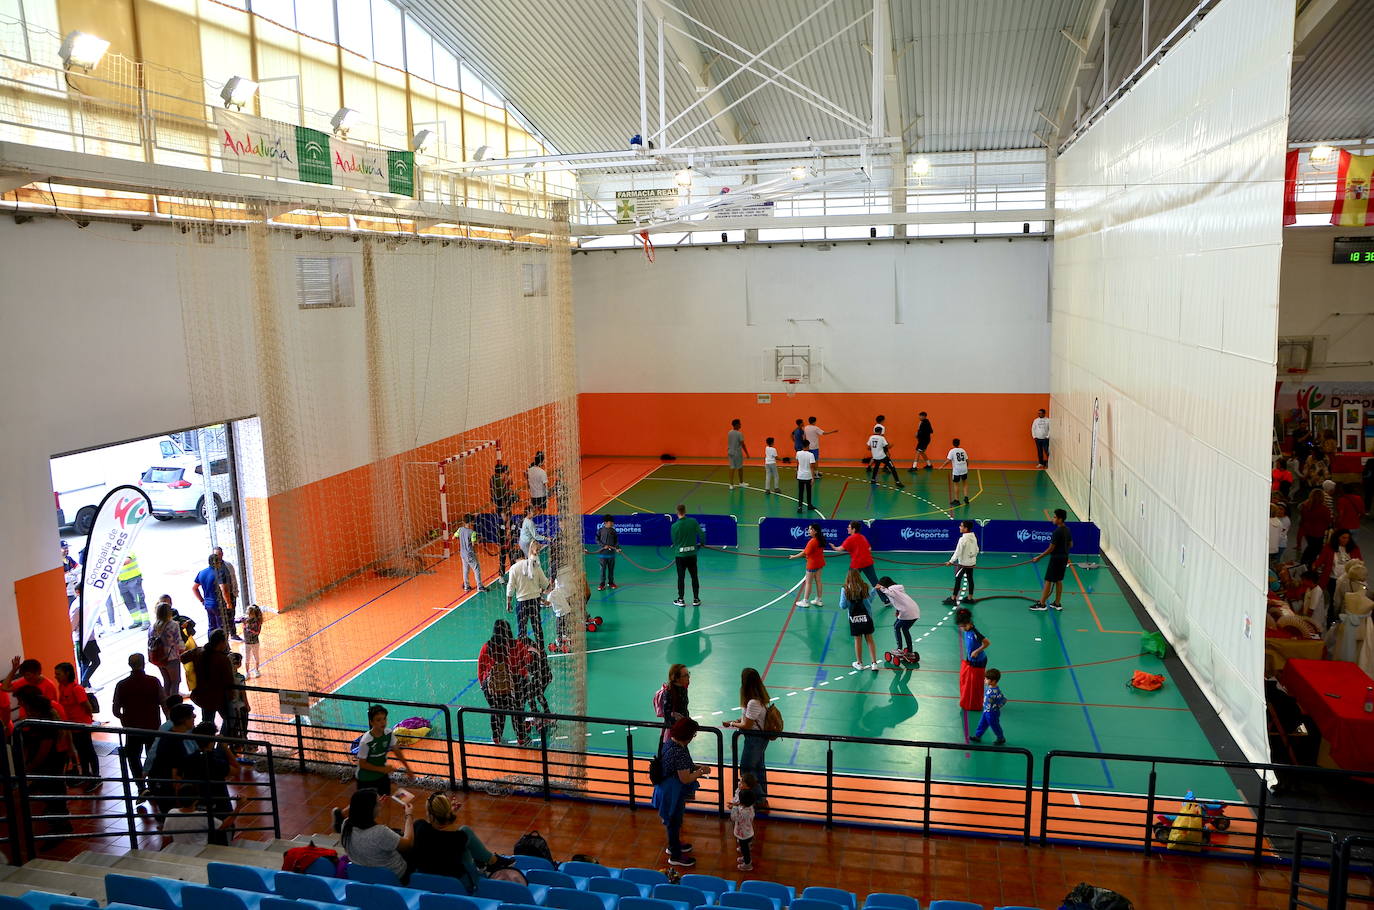 Clausura de los talleres y escuelas deportivas municipales de Huétor Vega